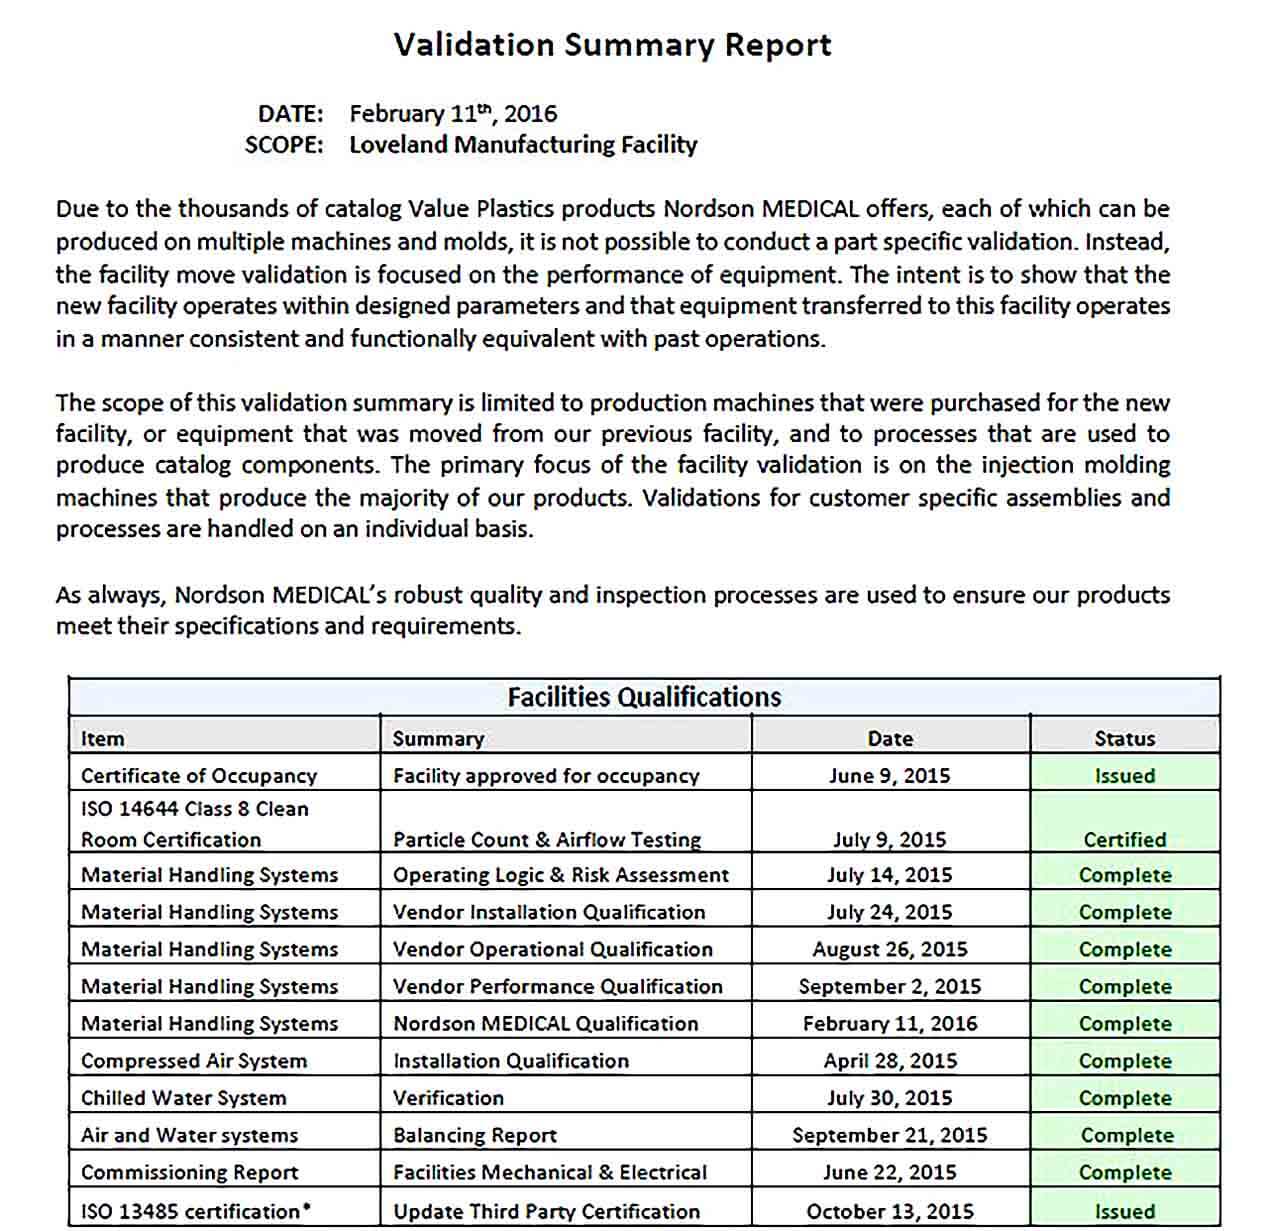 Sample Validation Summary Report